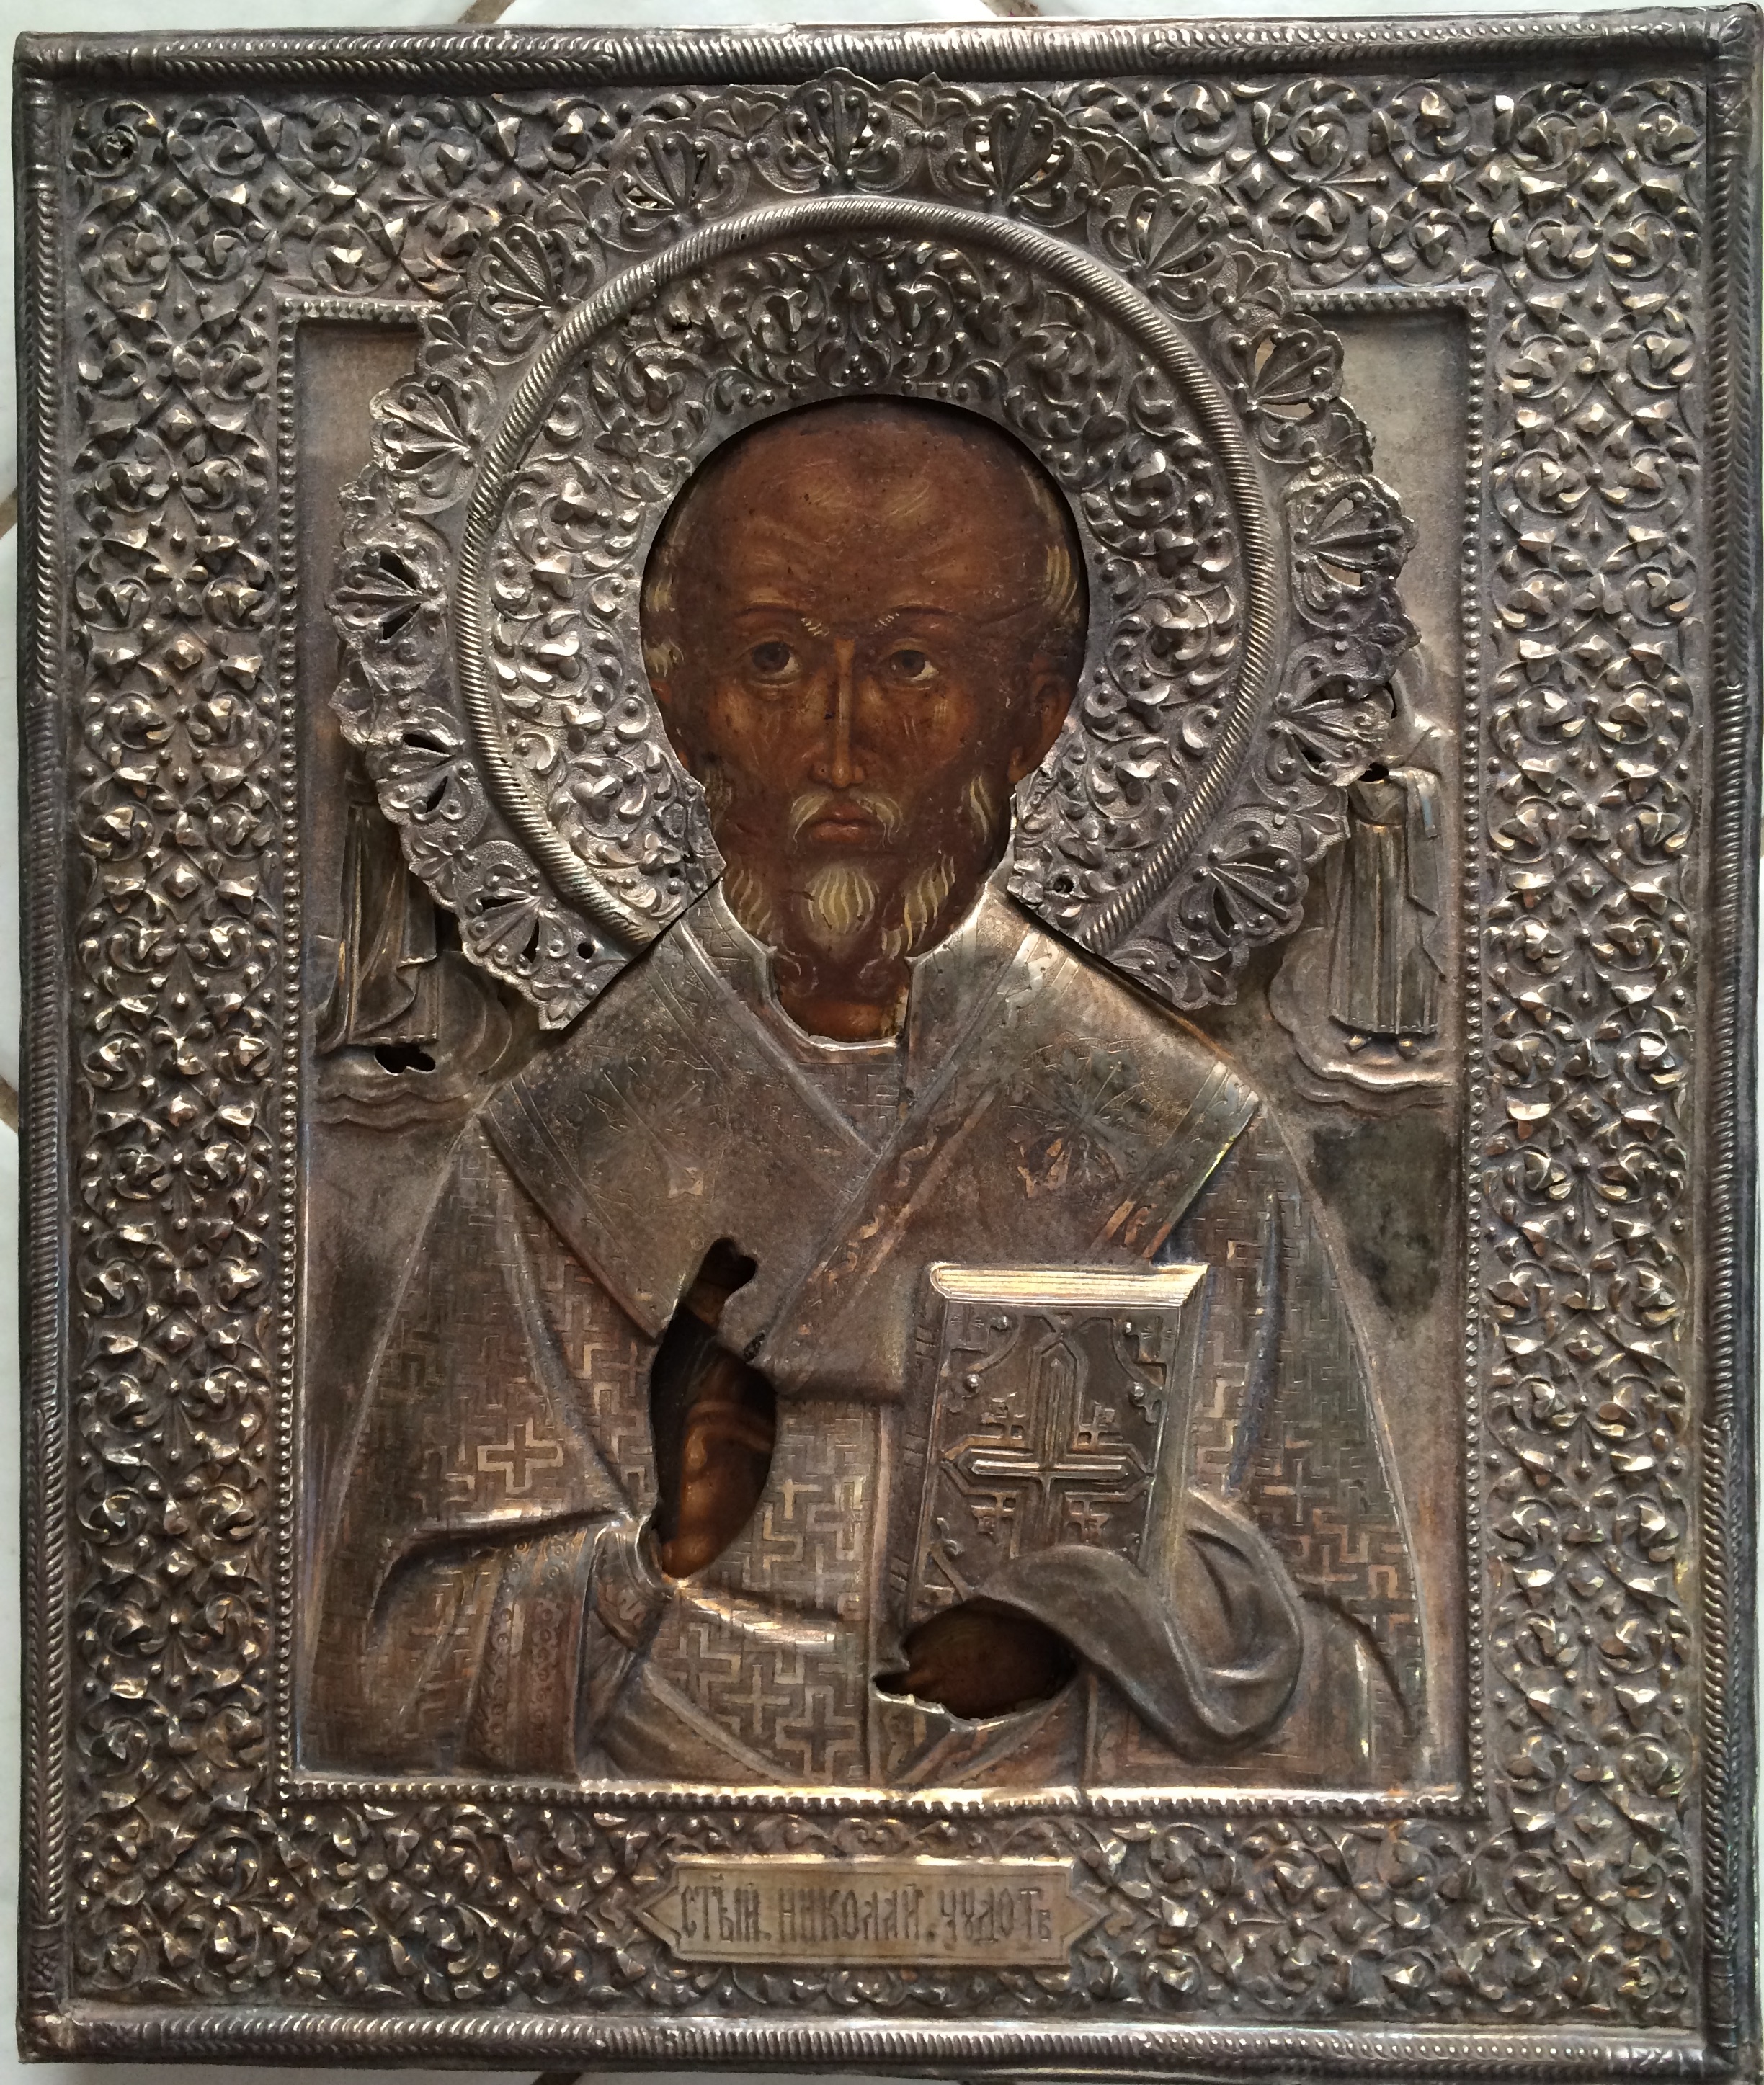 Купить икону старинную Николай угодник в серебряном окладе гречка предлагаем по хорошей цене